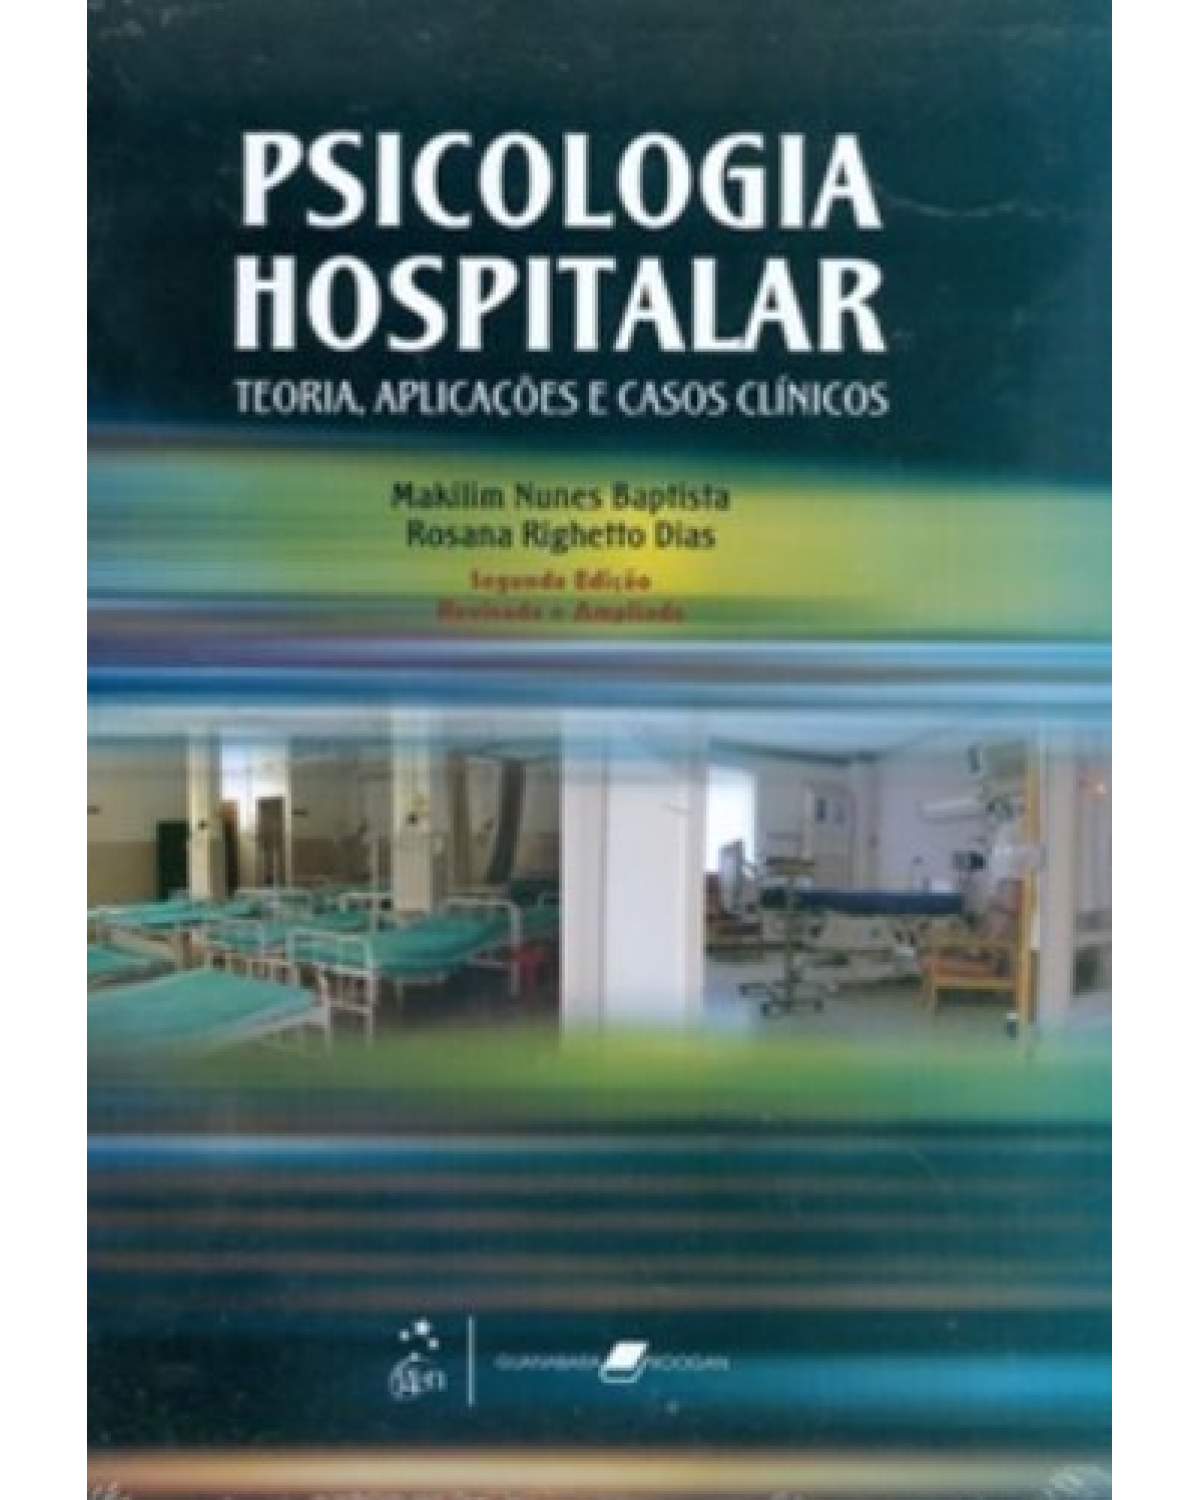 Psicologia hospitalar - Teoria, aplicações e casos clínicos - 2ª Edição | 2009